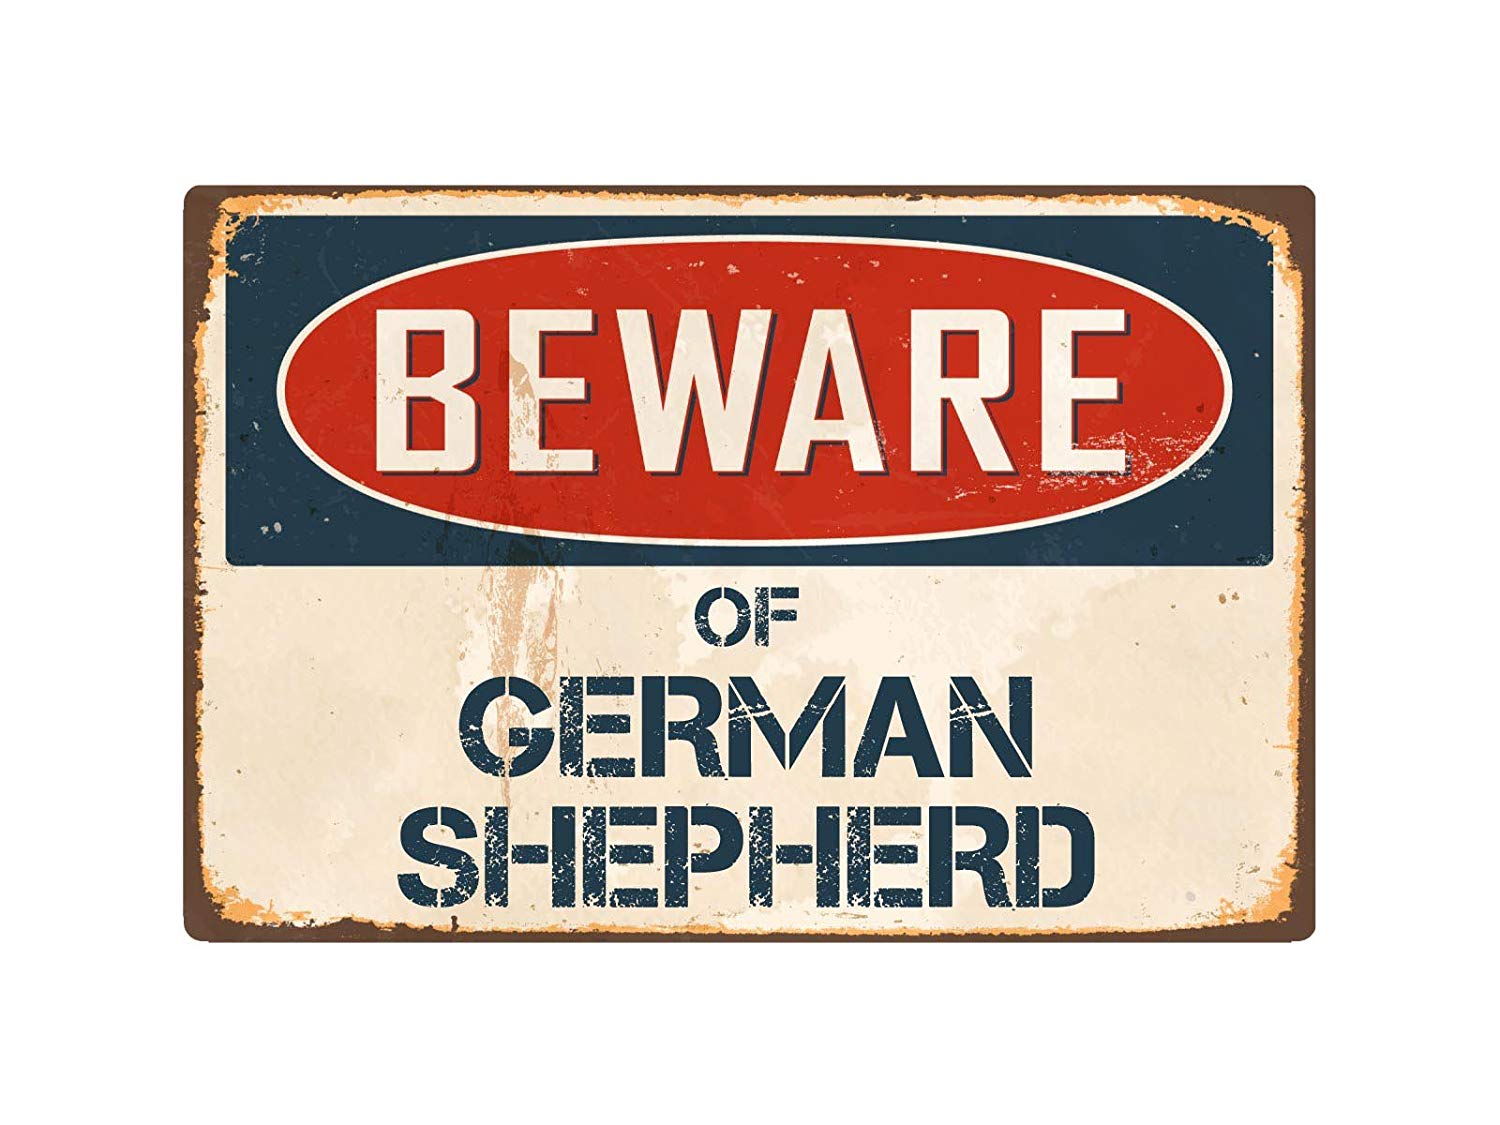 A beware retro sign that says - Beware of German Shepherd